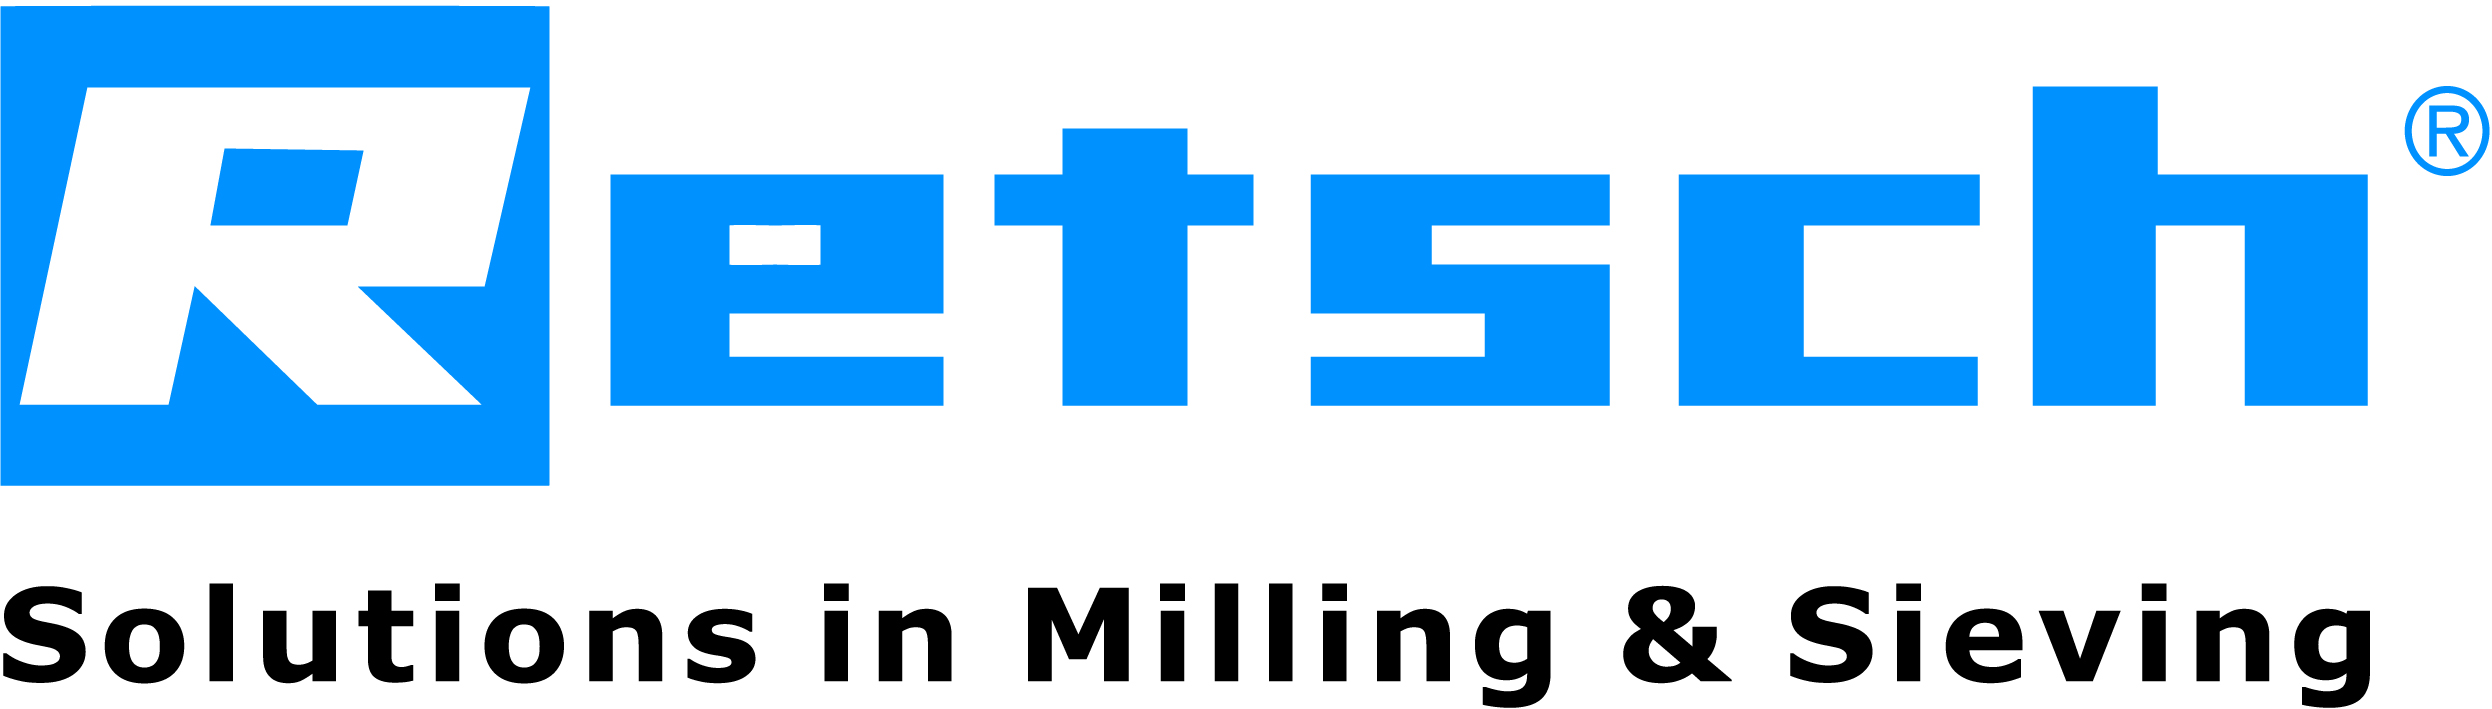 logo Retsch